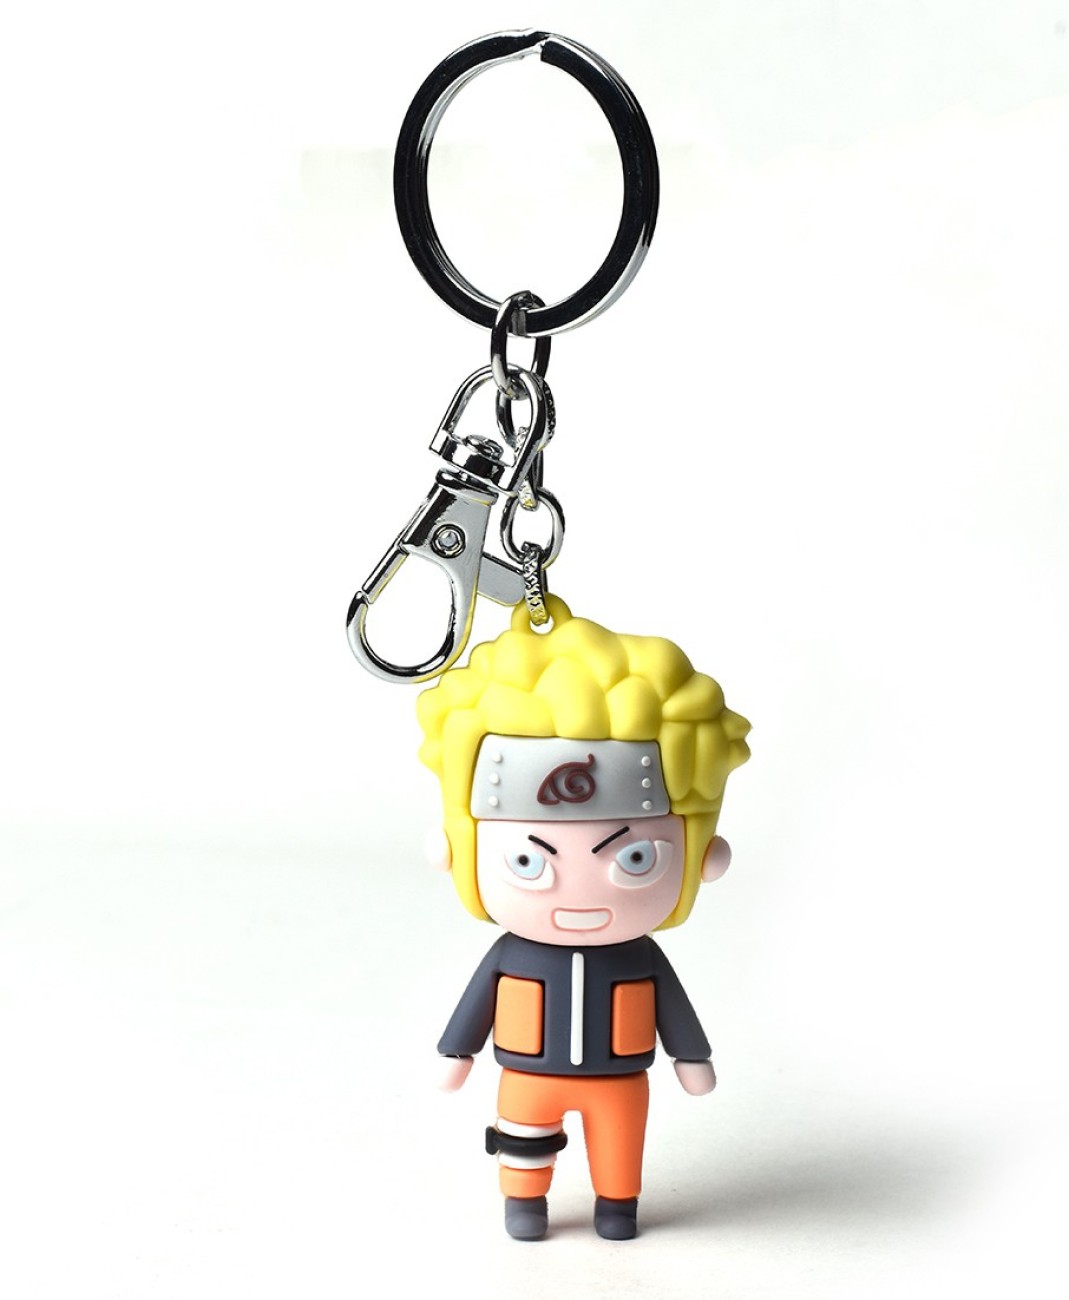 PATPAT Naruto Keychain, Anime Keychain, Cute Keychains, Anime Accessories,  Naruto Uzumaki Figures Keychain Collection (Naruto Uzumaki)